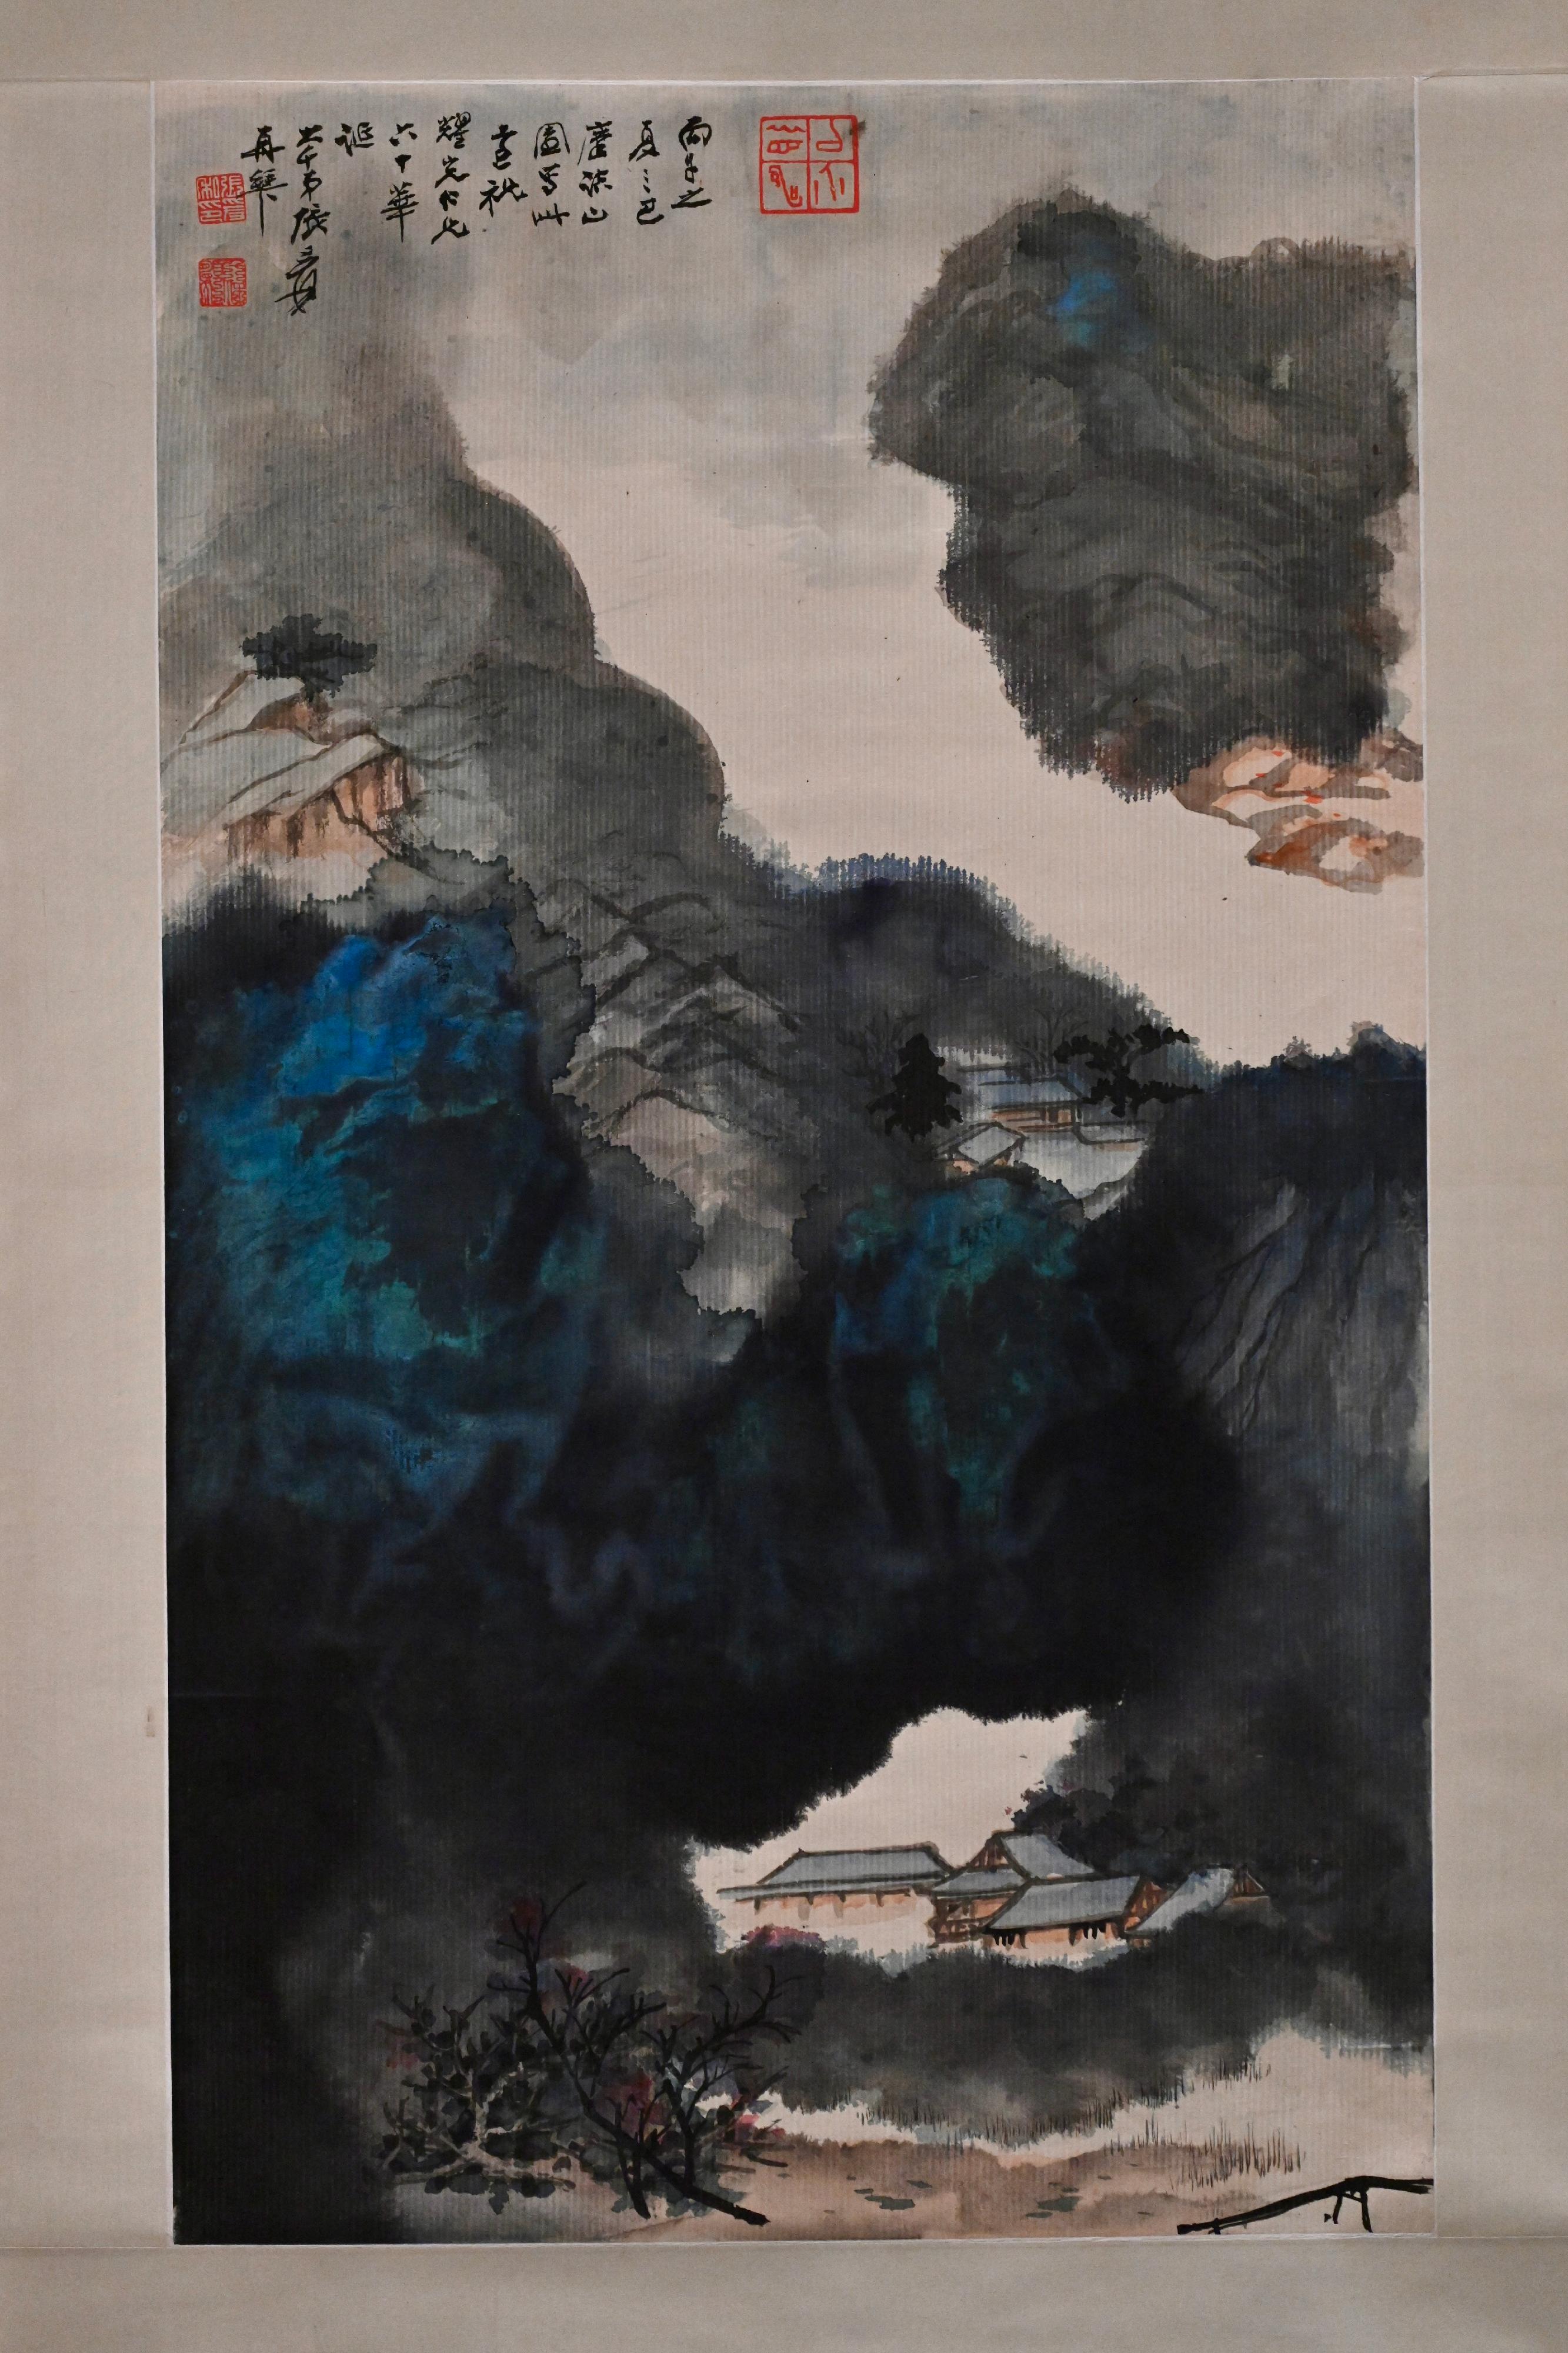 「雅慶──給至樂樓主人的生日賀言」展覽明日（七月十四日）起在香港藝術館舉行。圖示張大千送給何耀光的畫作《潑彩山水》。



